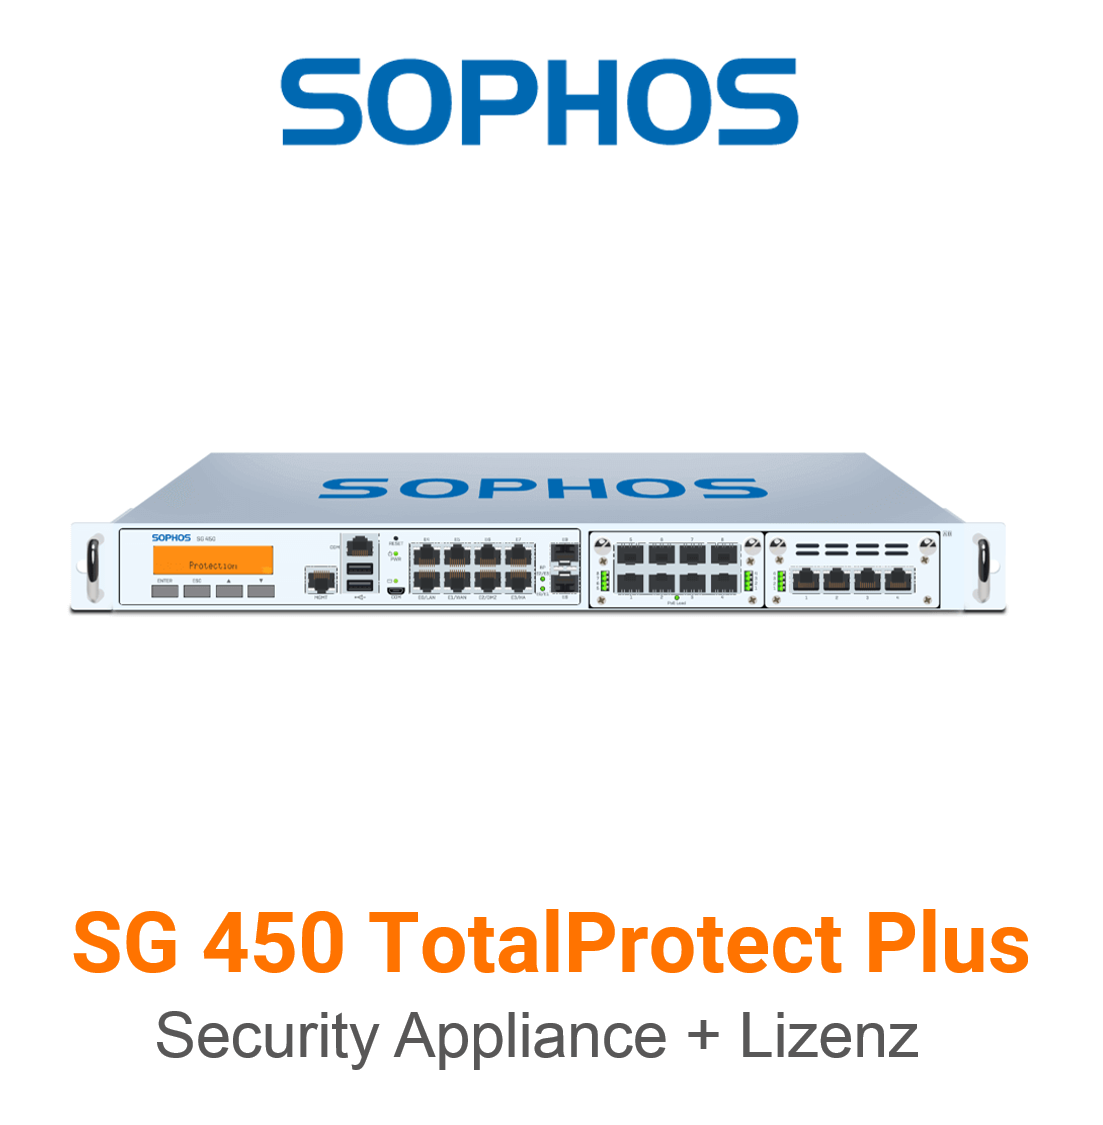 Sophos SG 450 TotalProtect Plus Bundle (Hardware + Lizenz)